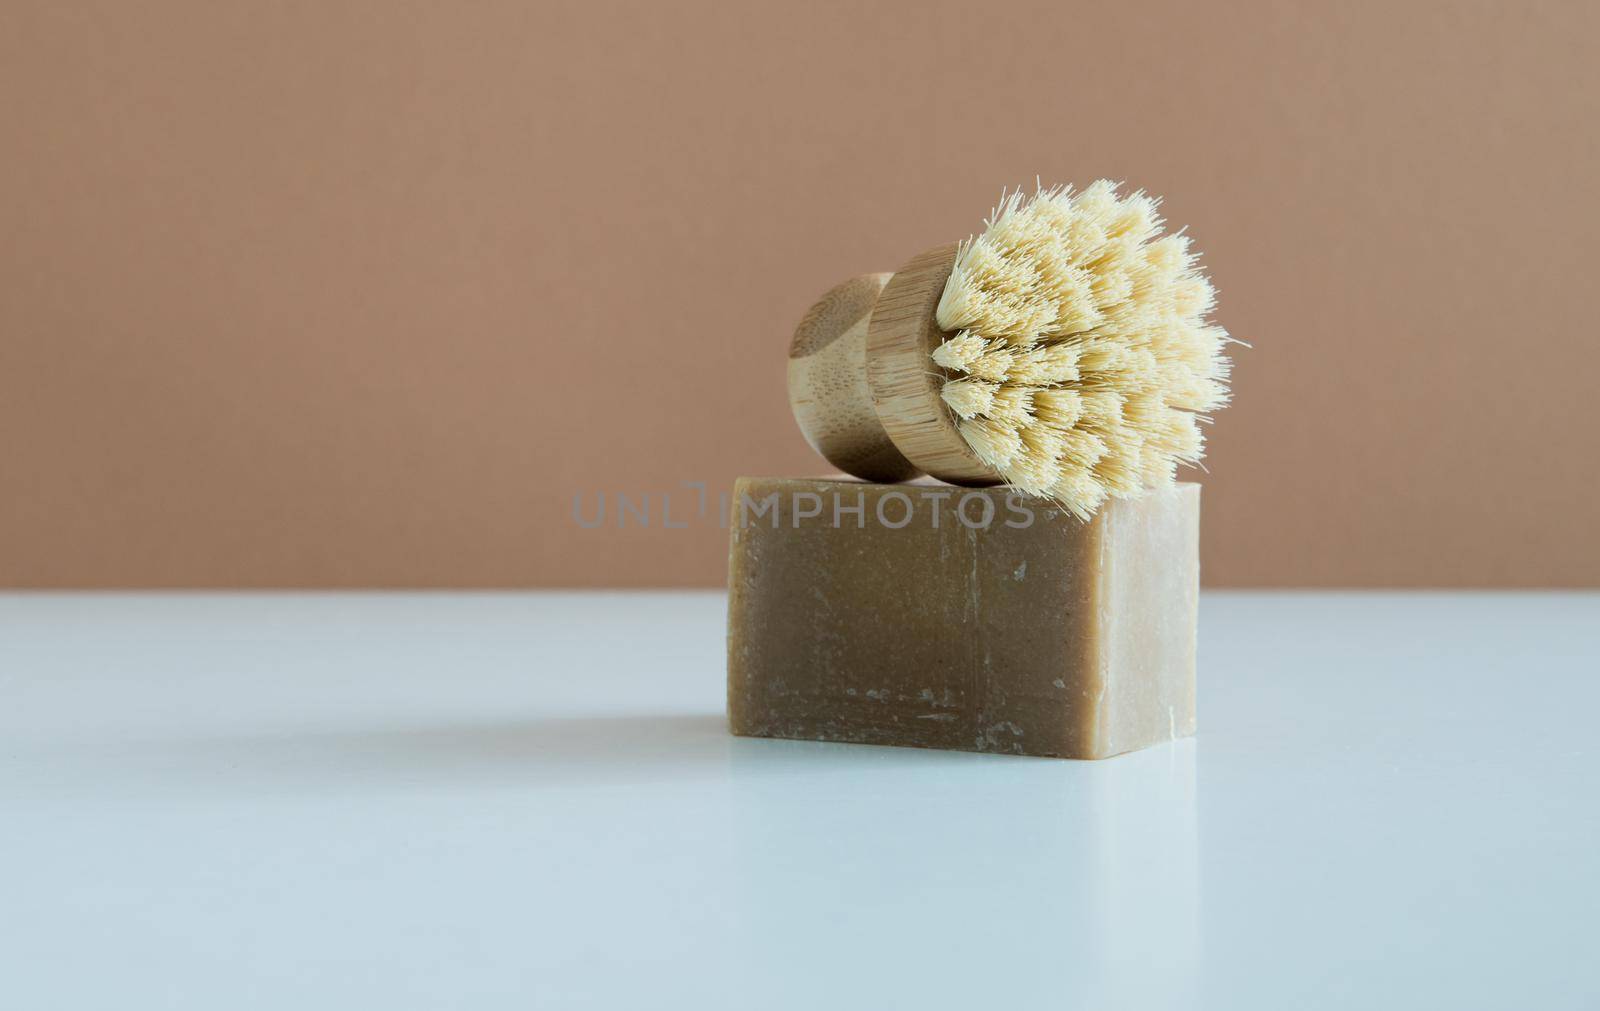 zero waste bamboo brush with soap for dishwashing by maramorosz